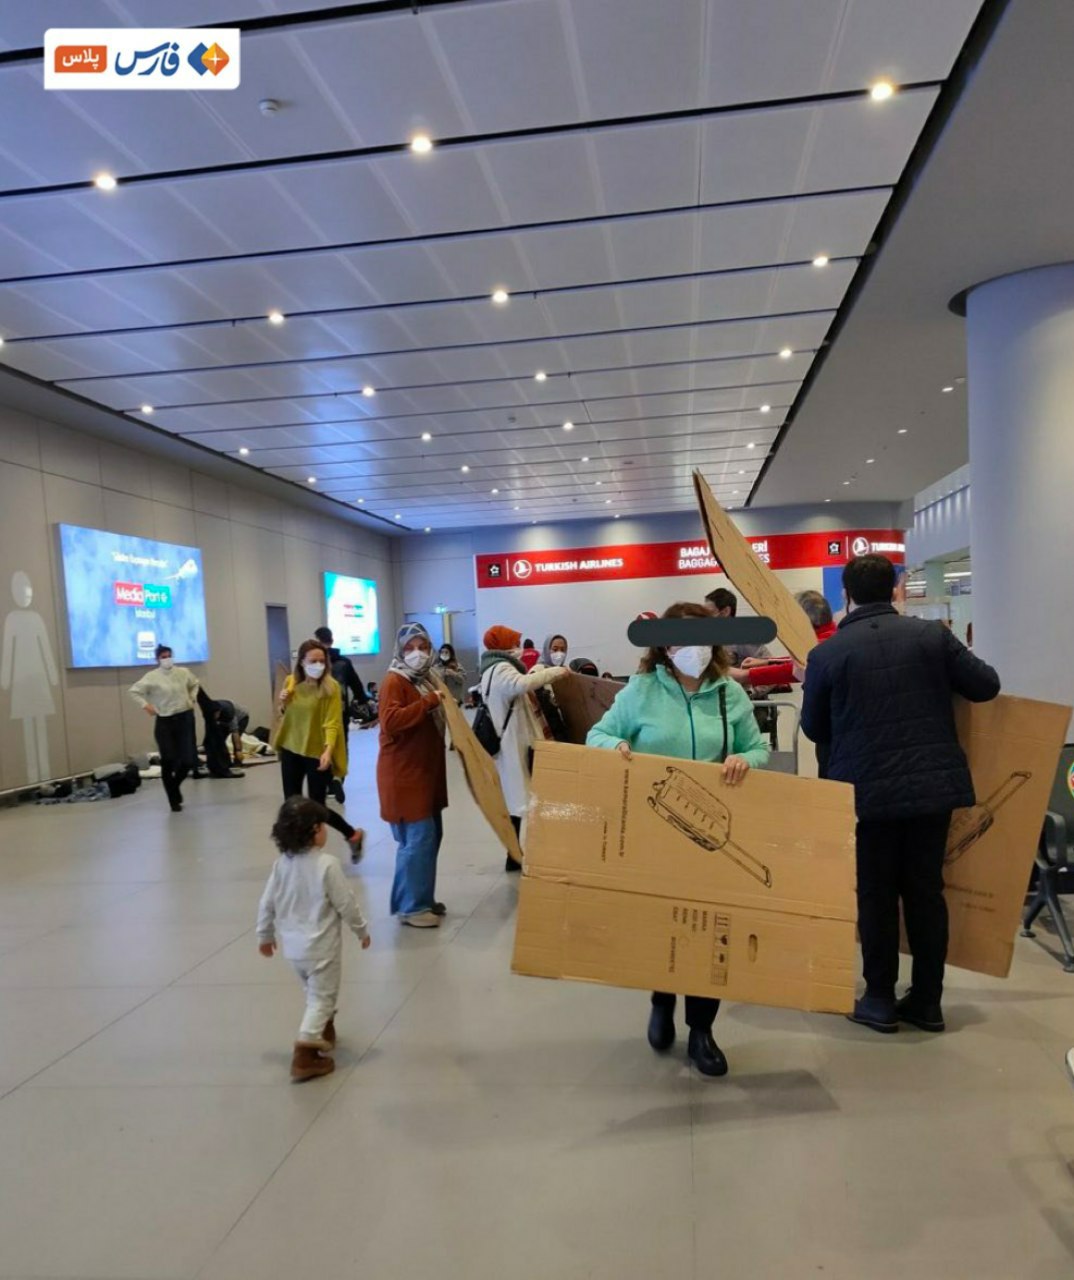 پذیرایی خجالت آور از مسافران در فرودگاه استانبول+عکس